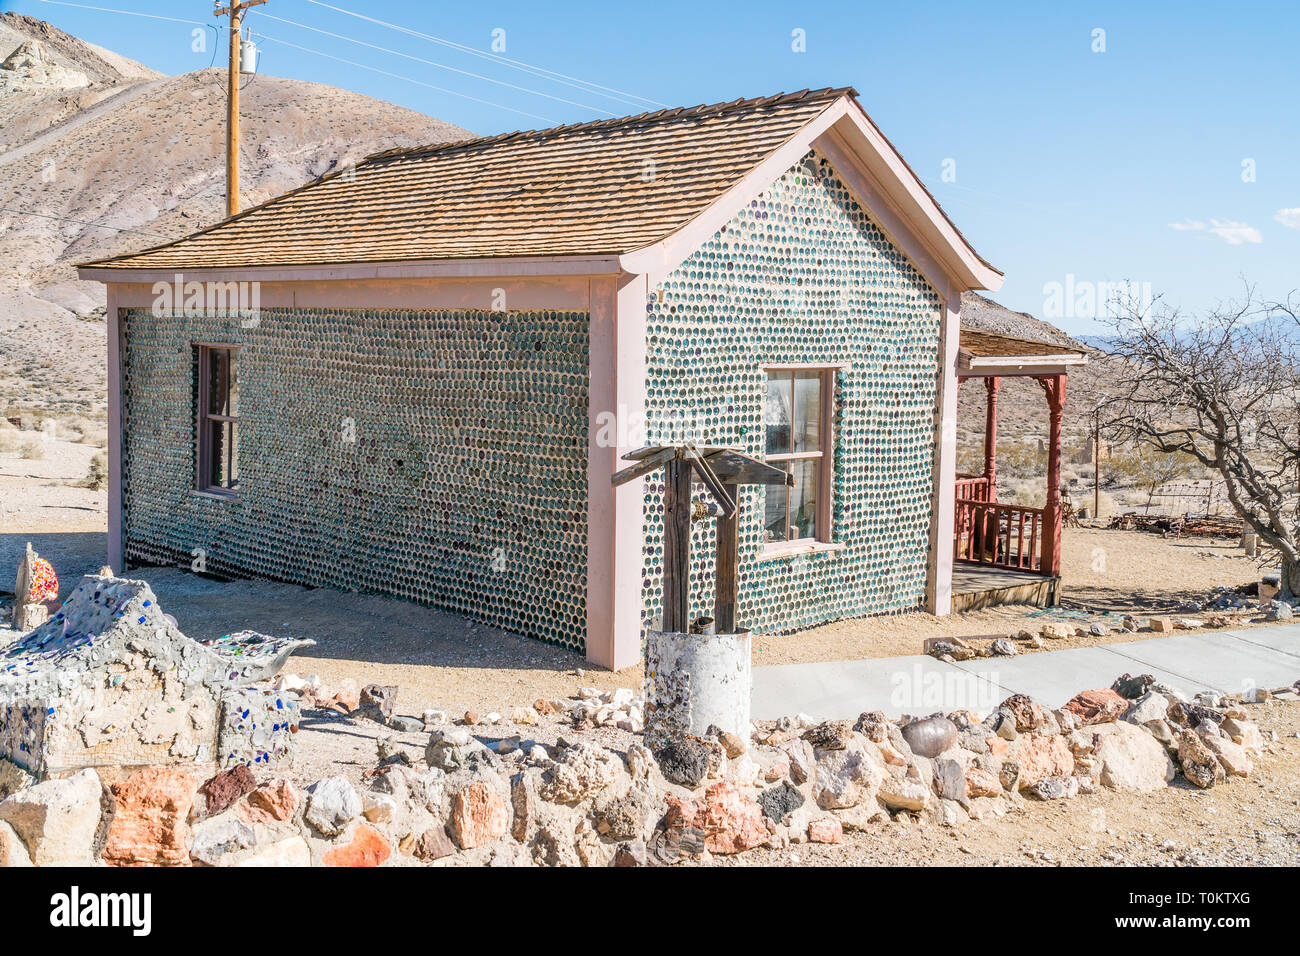 Un uomo di nome Tom Kelly ha costruito la bottiglia House di riolite, Nevada intorno al 1905, poco prima dell'economia e le miniere si è schiantato. La casa è costruita di ap Foto Stock